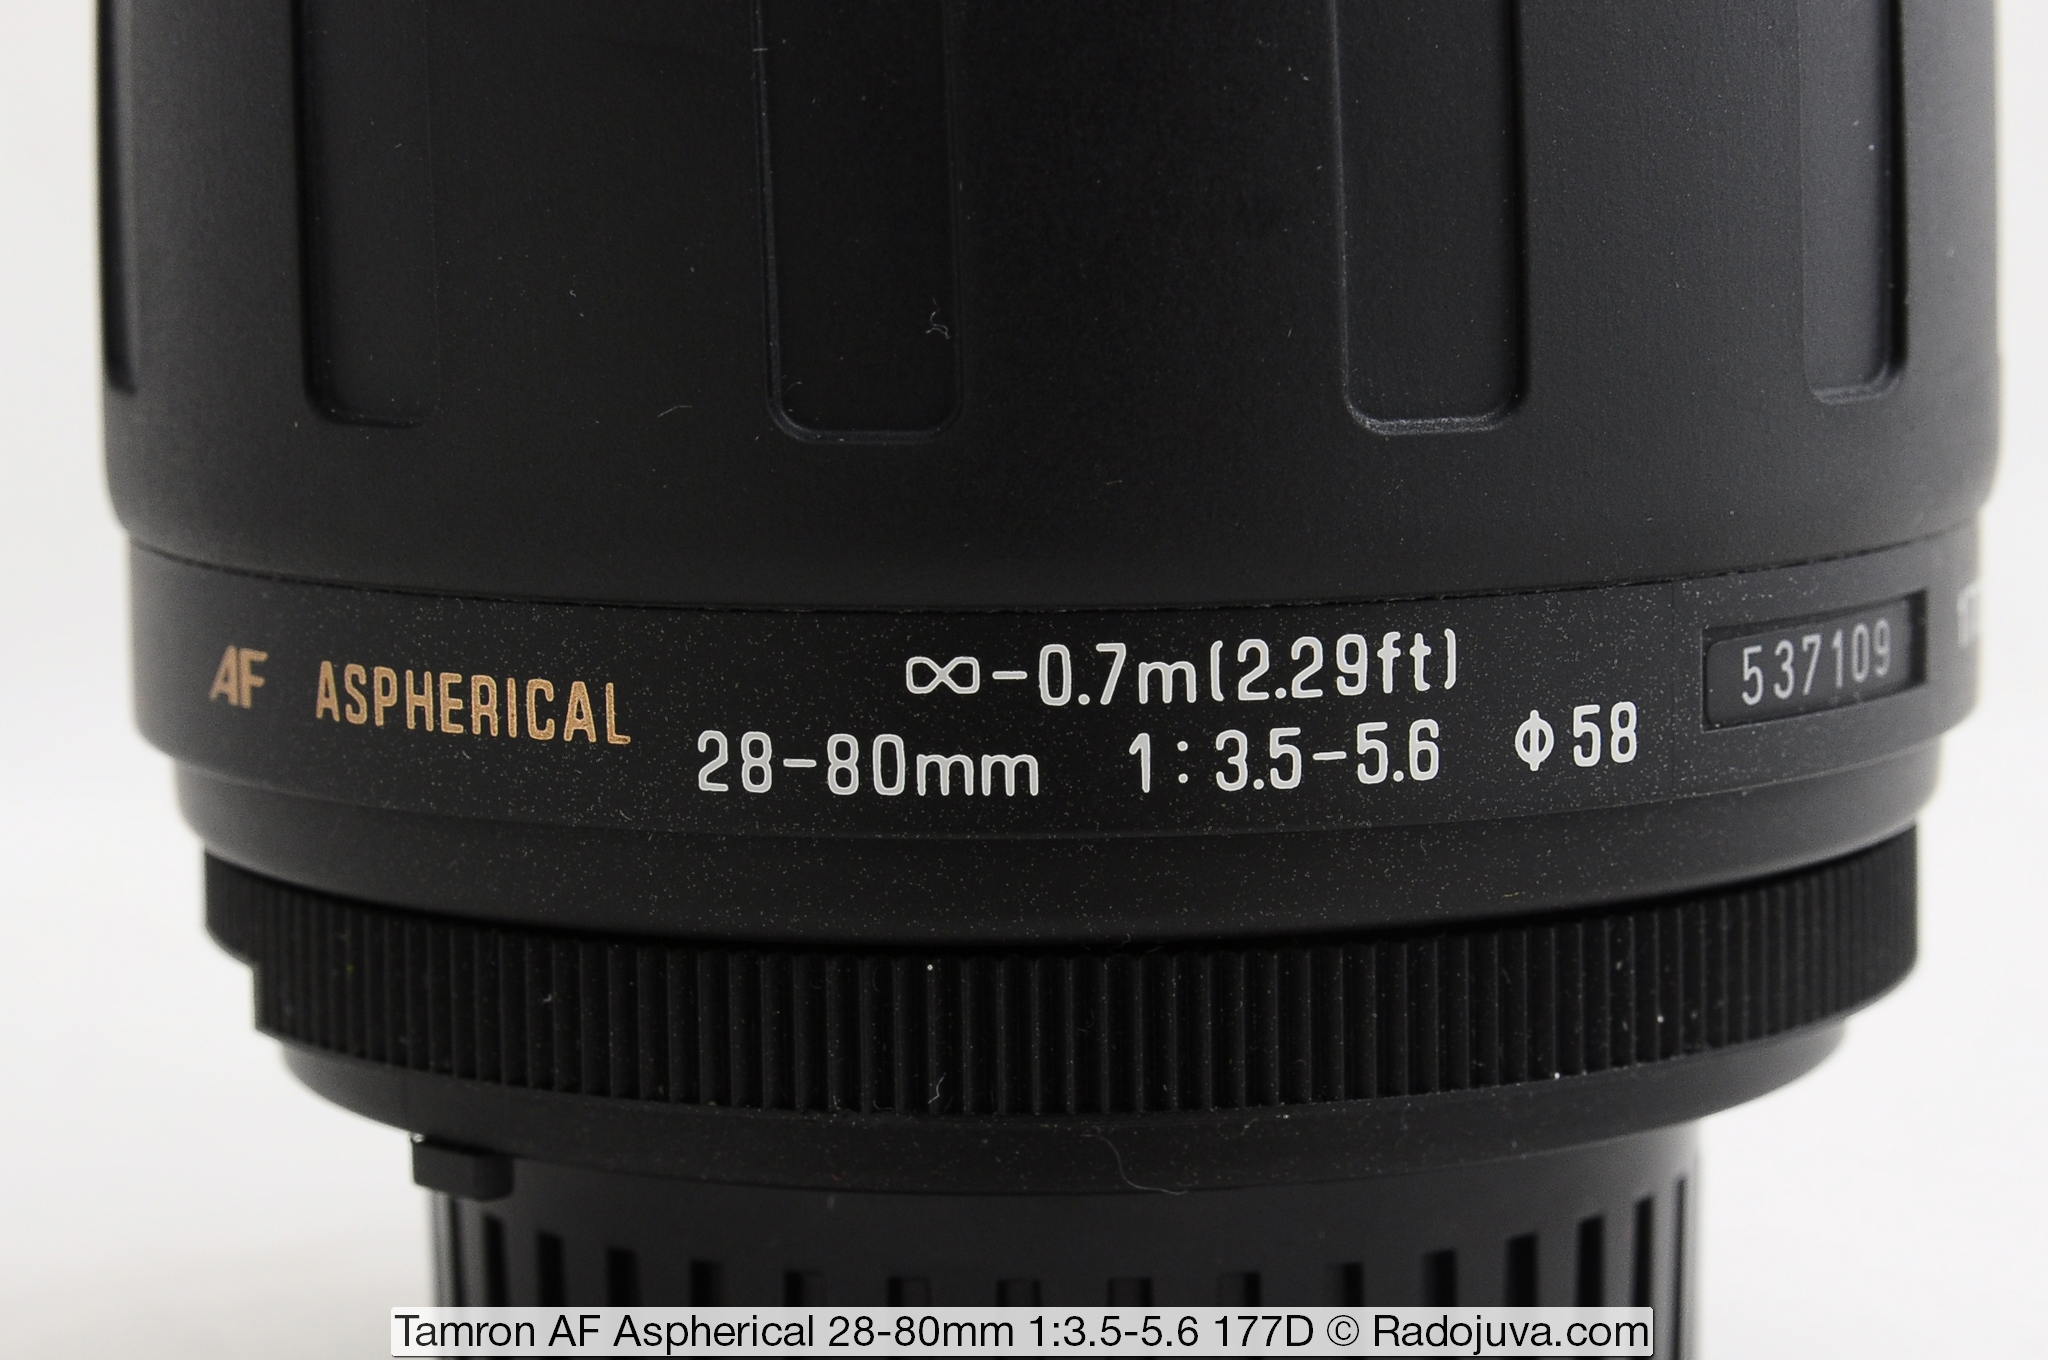 Tamron AF Aspherical 28-80mm 1: 3.5-5.6 177D